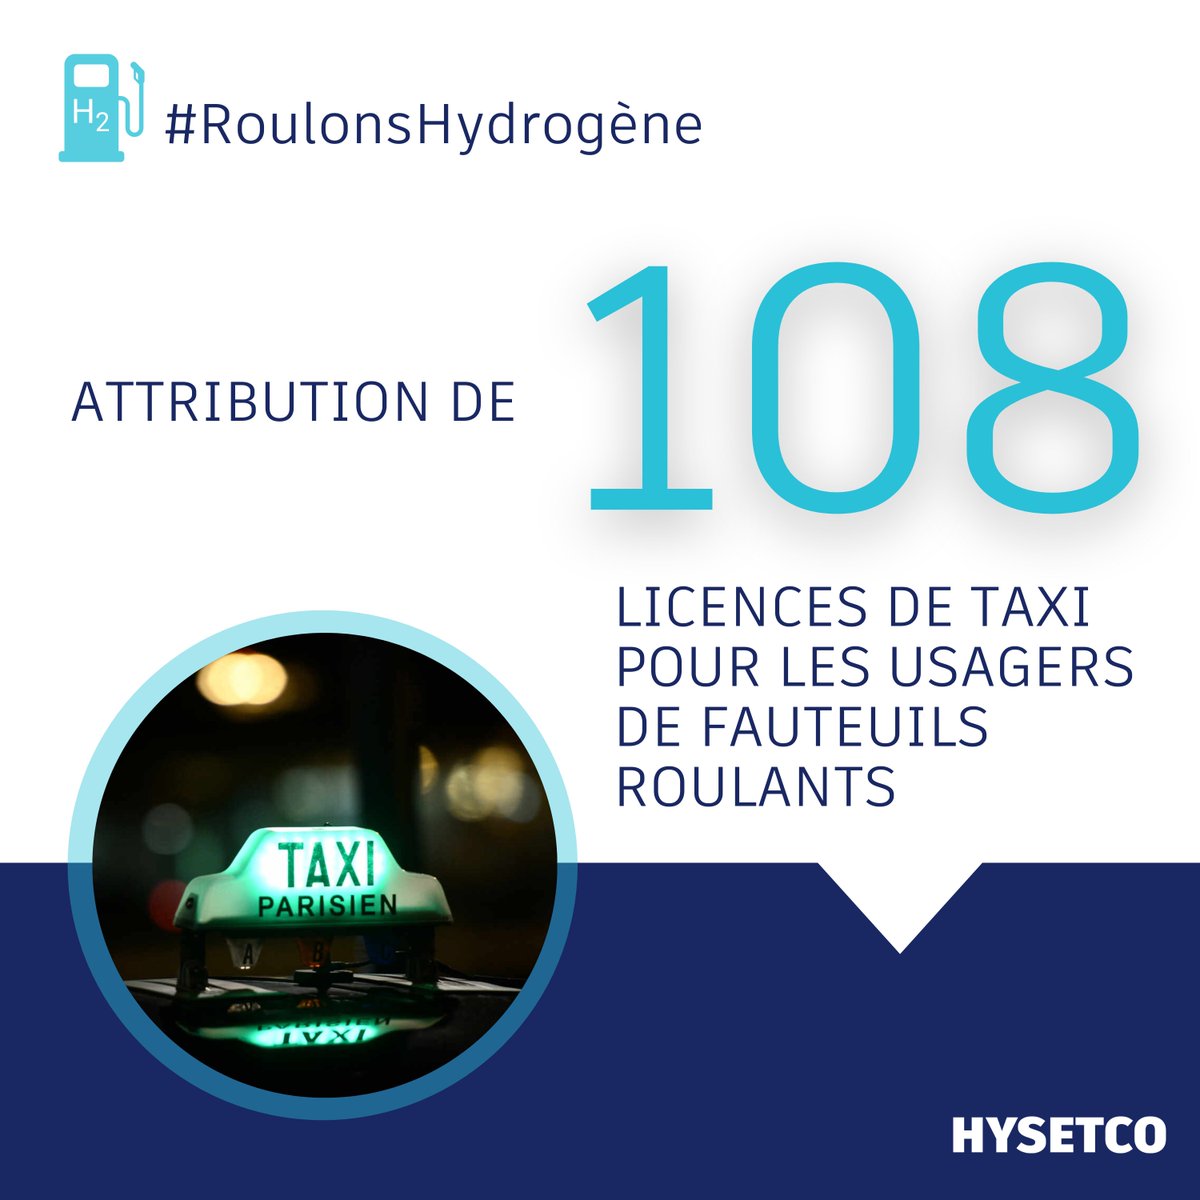 #BreakingNews 🧑‍🦽Une 1ère mondiale : les usagers de fauteuils roulants pourront prendre un #taxi hydrogène à Paris en 2024 ! 🤩Le @Prefet75_IDF vient de nous attribuer 1️⃣0️⃣8️⃣ nouvelles licences taxis pour les transporter à bord de nos véhicules #hydrogène 0 émission